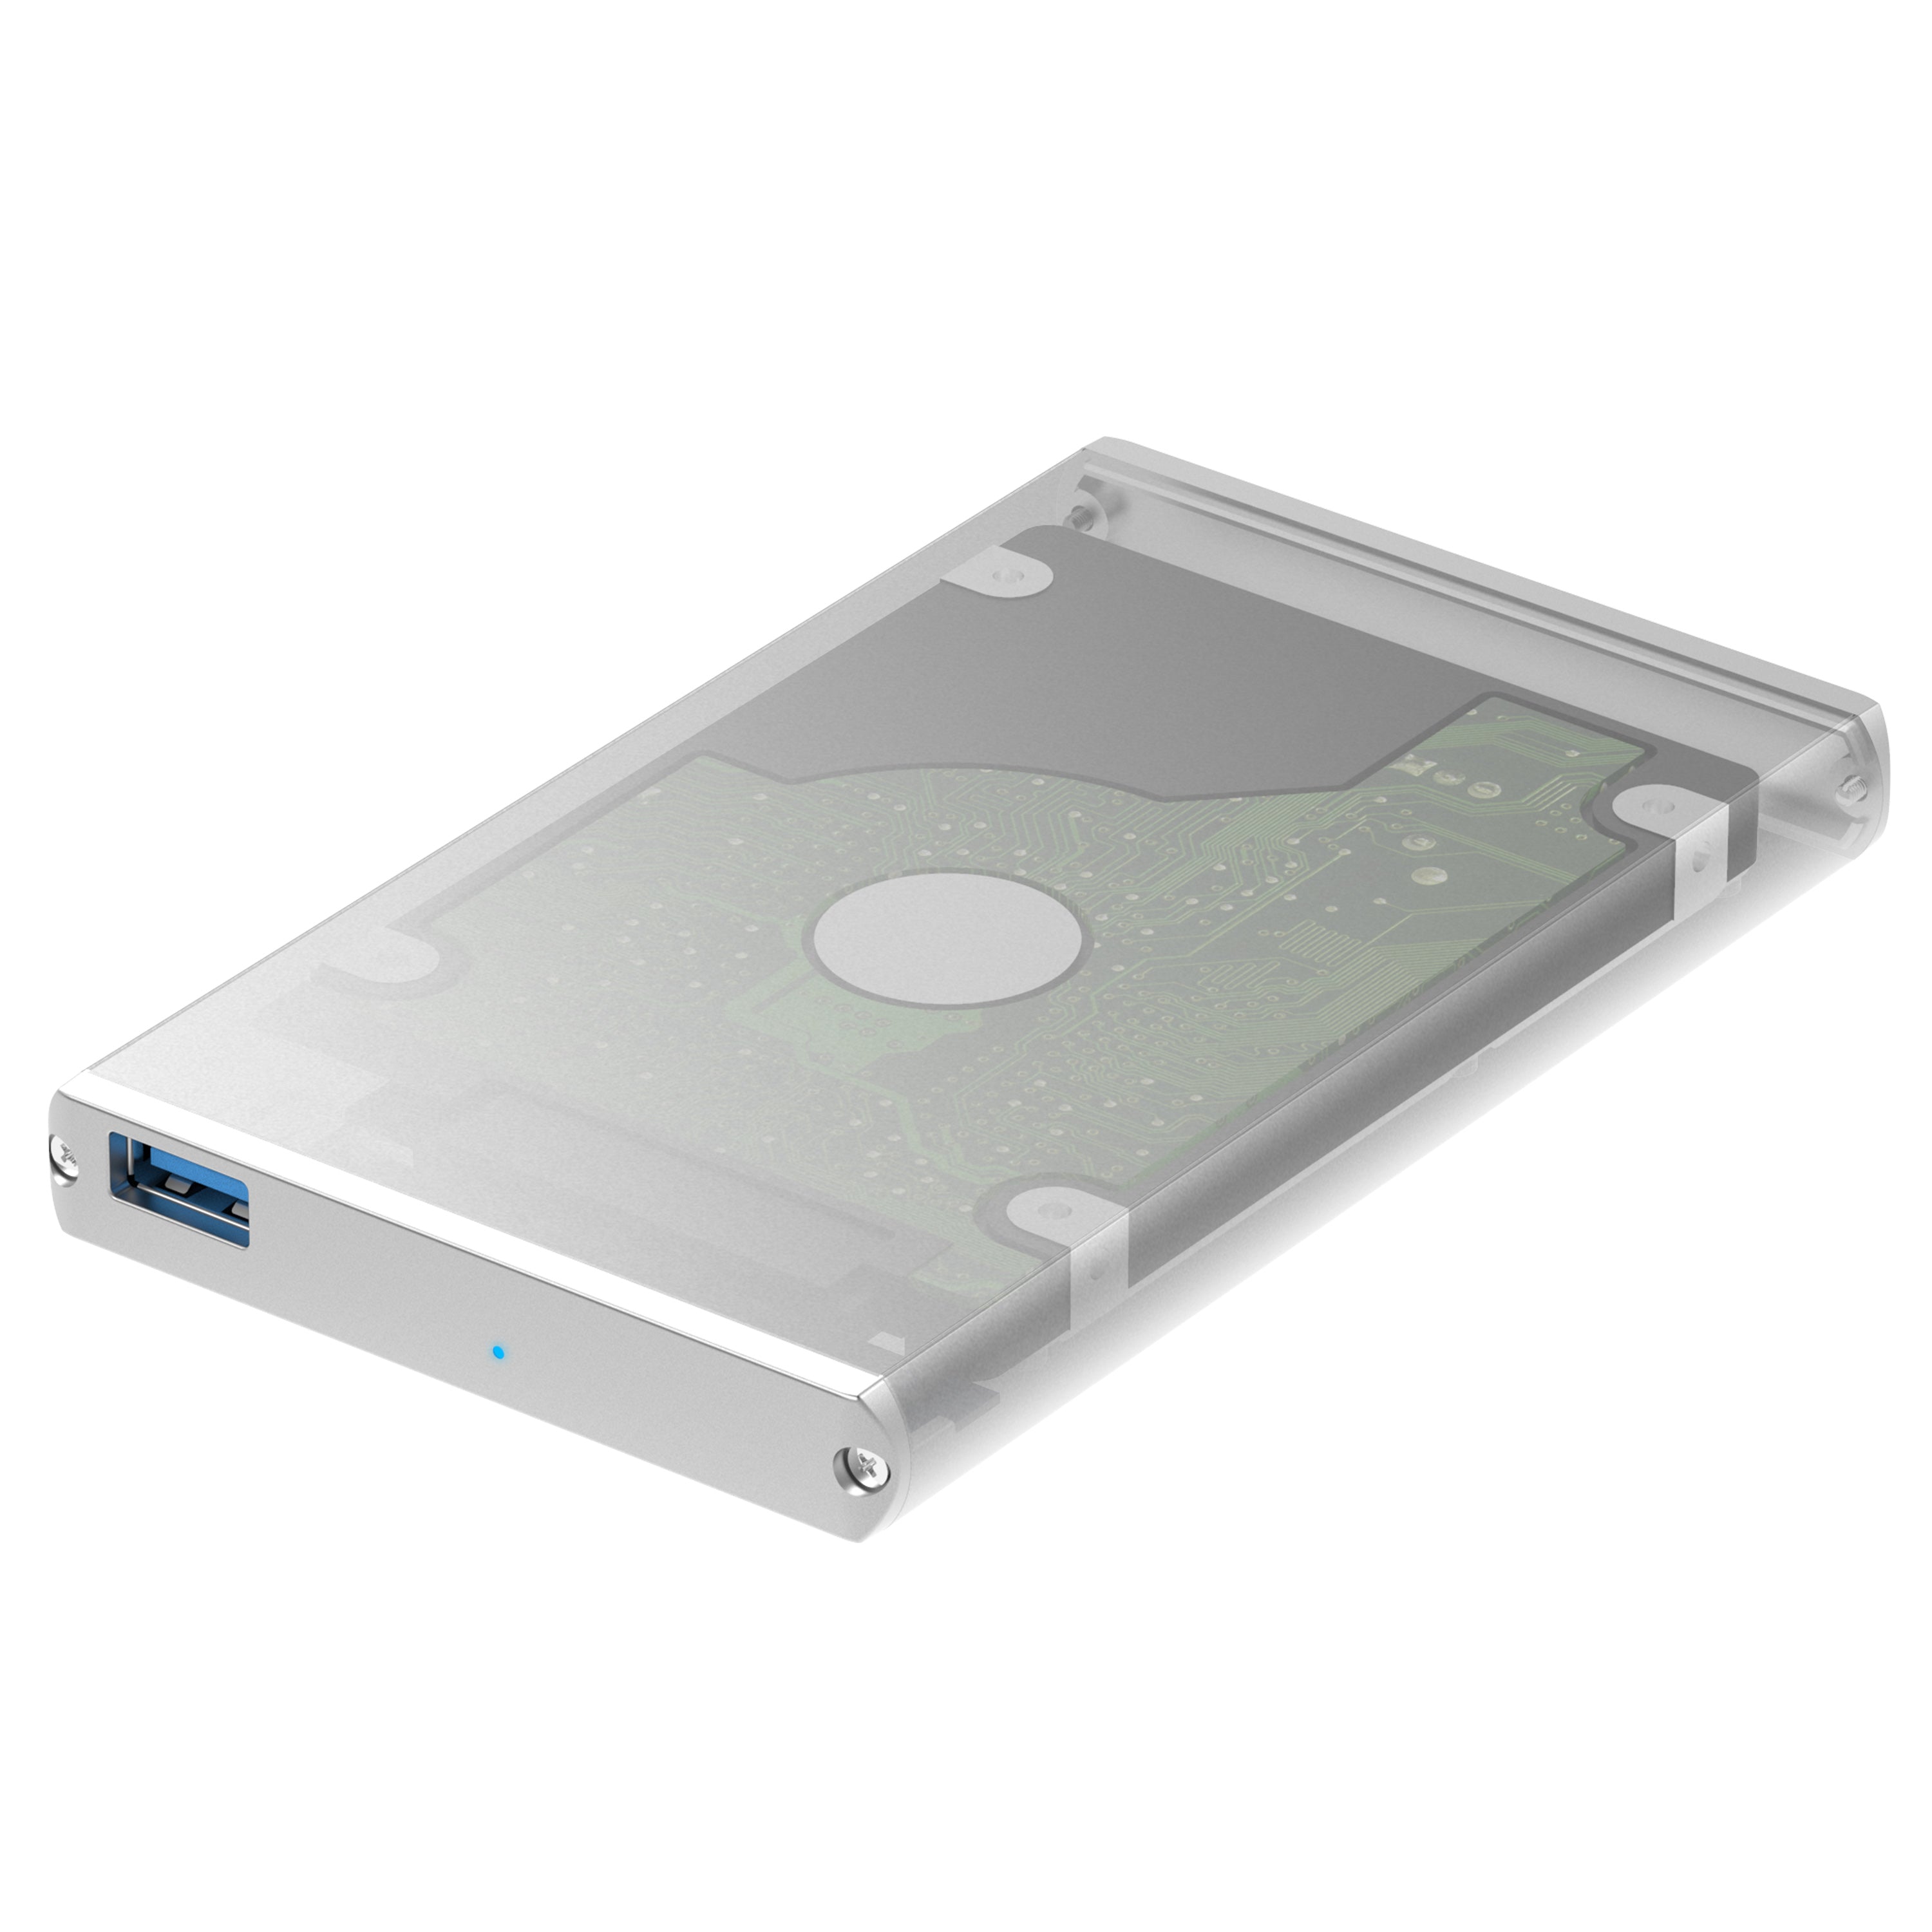 USB 3.0 2.5-Inch SATA External Aluminum Hard Drive Enclosure - Sabrent